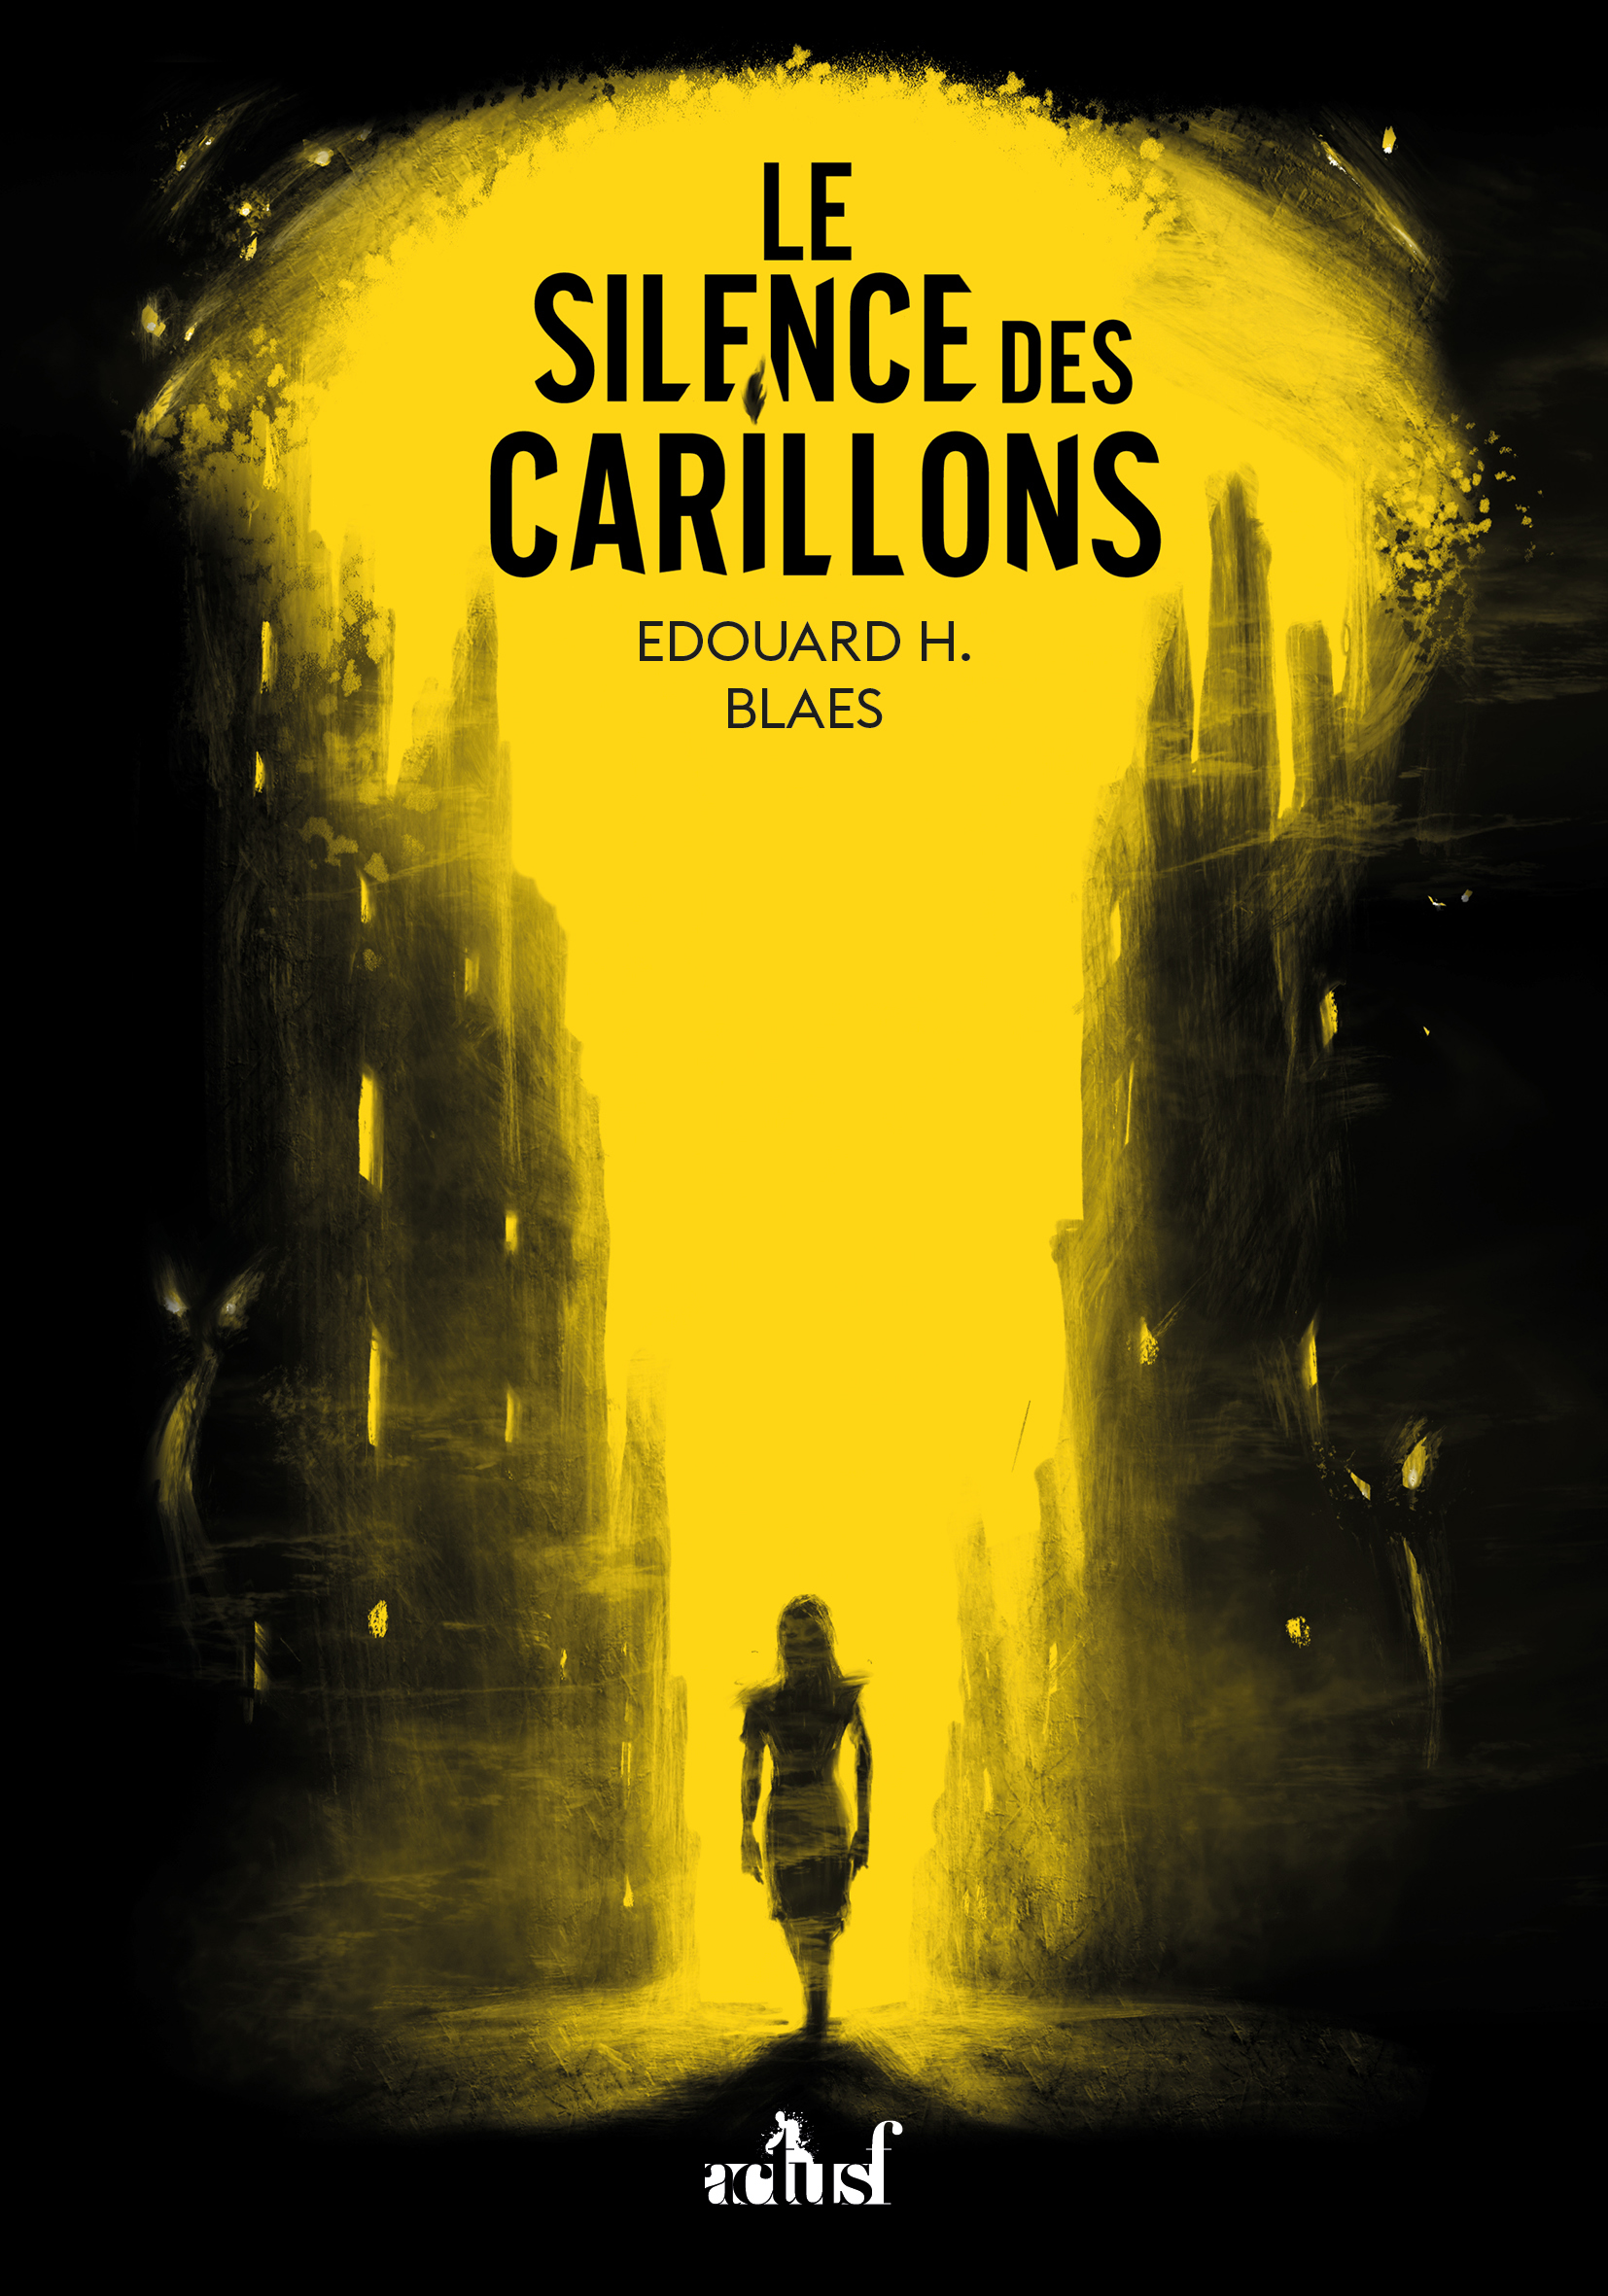 Le Silence des Carillons de Edouard H. Blaes